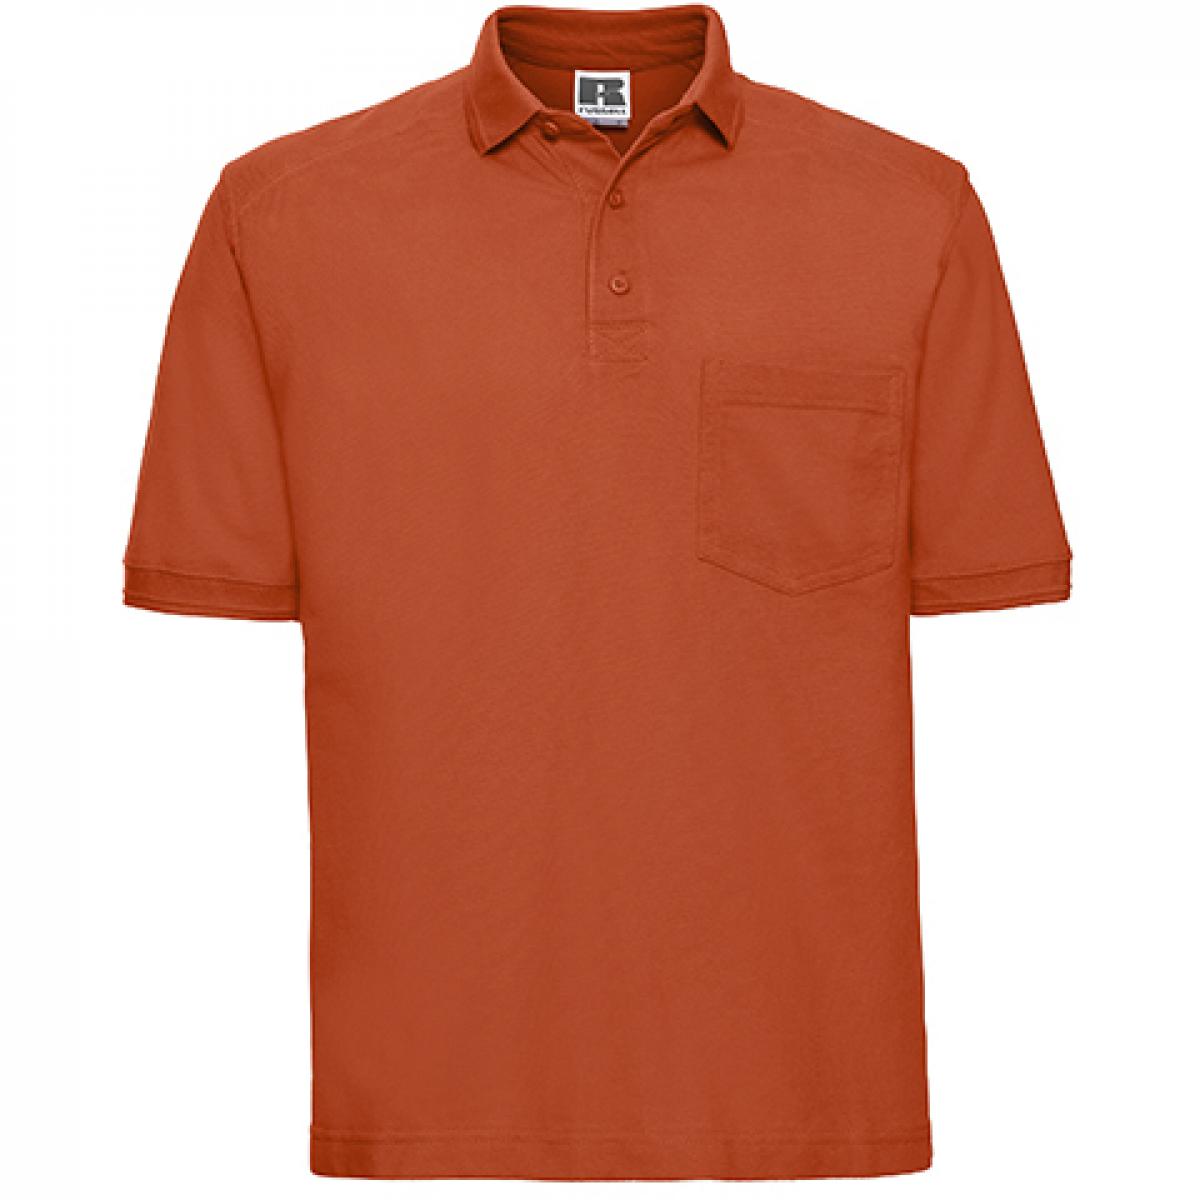 Hersteller: Russell Herstellernummer: R-011M-0 Artikelbezeichnung: Herren Workwear-Poloshirt - Waschbar bis 60 °C Farbe: Orange